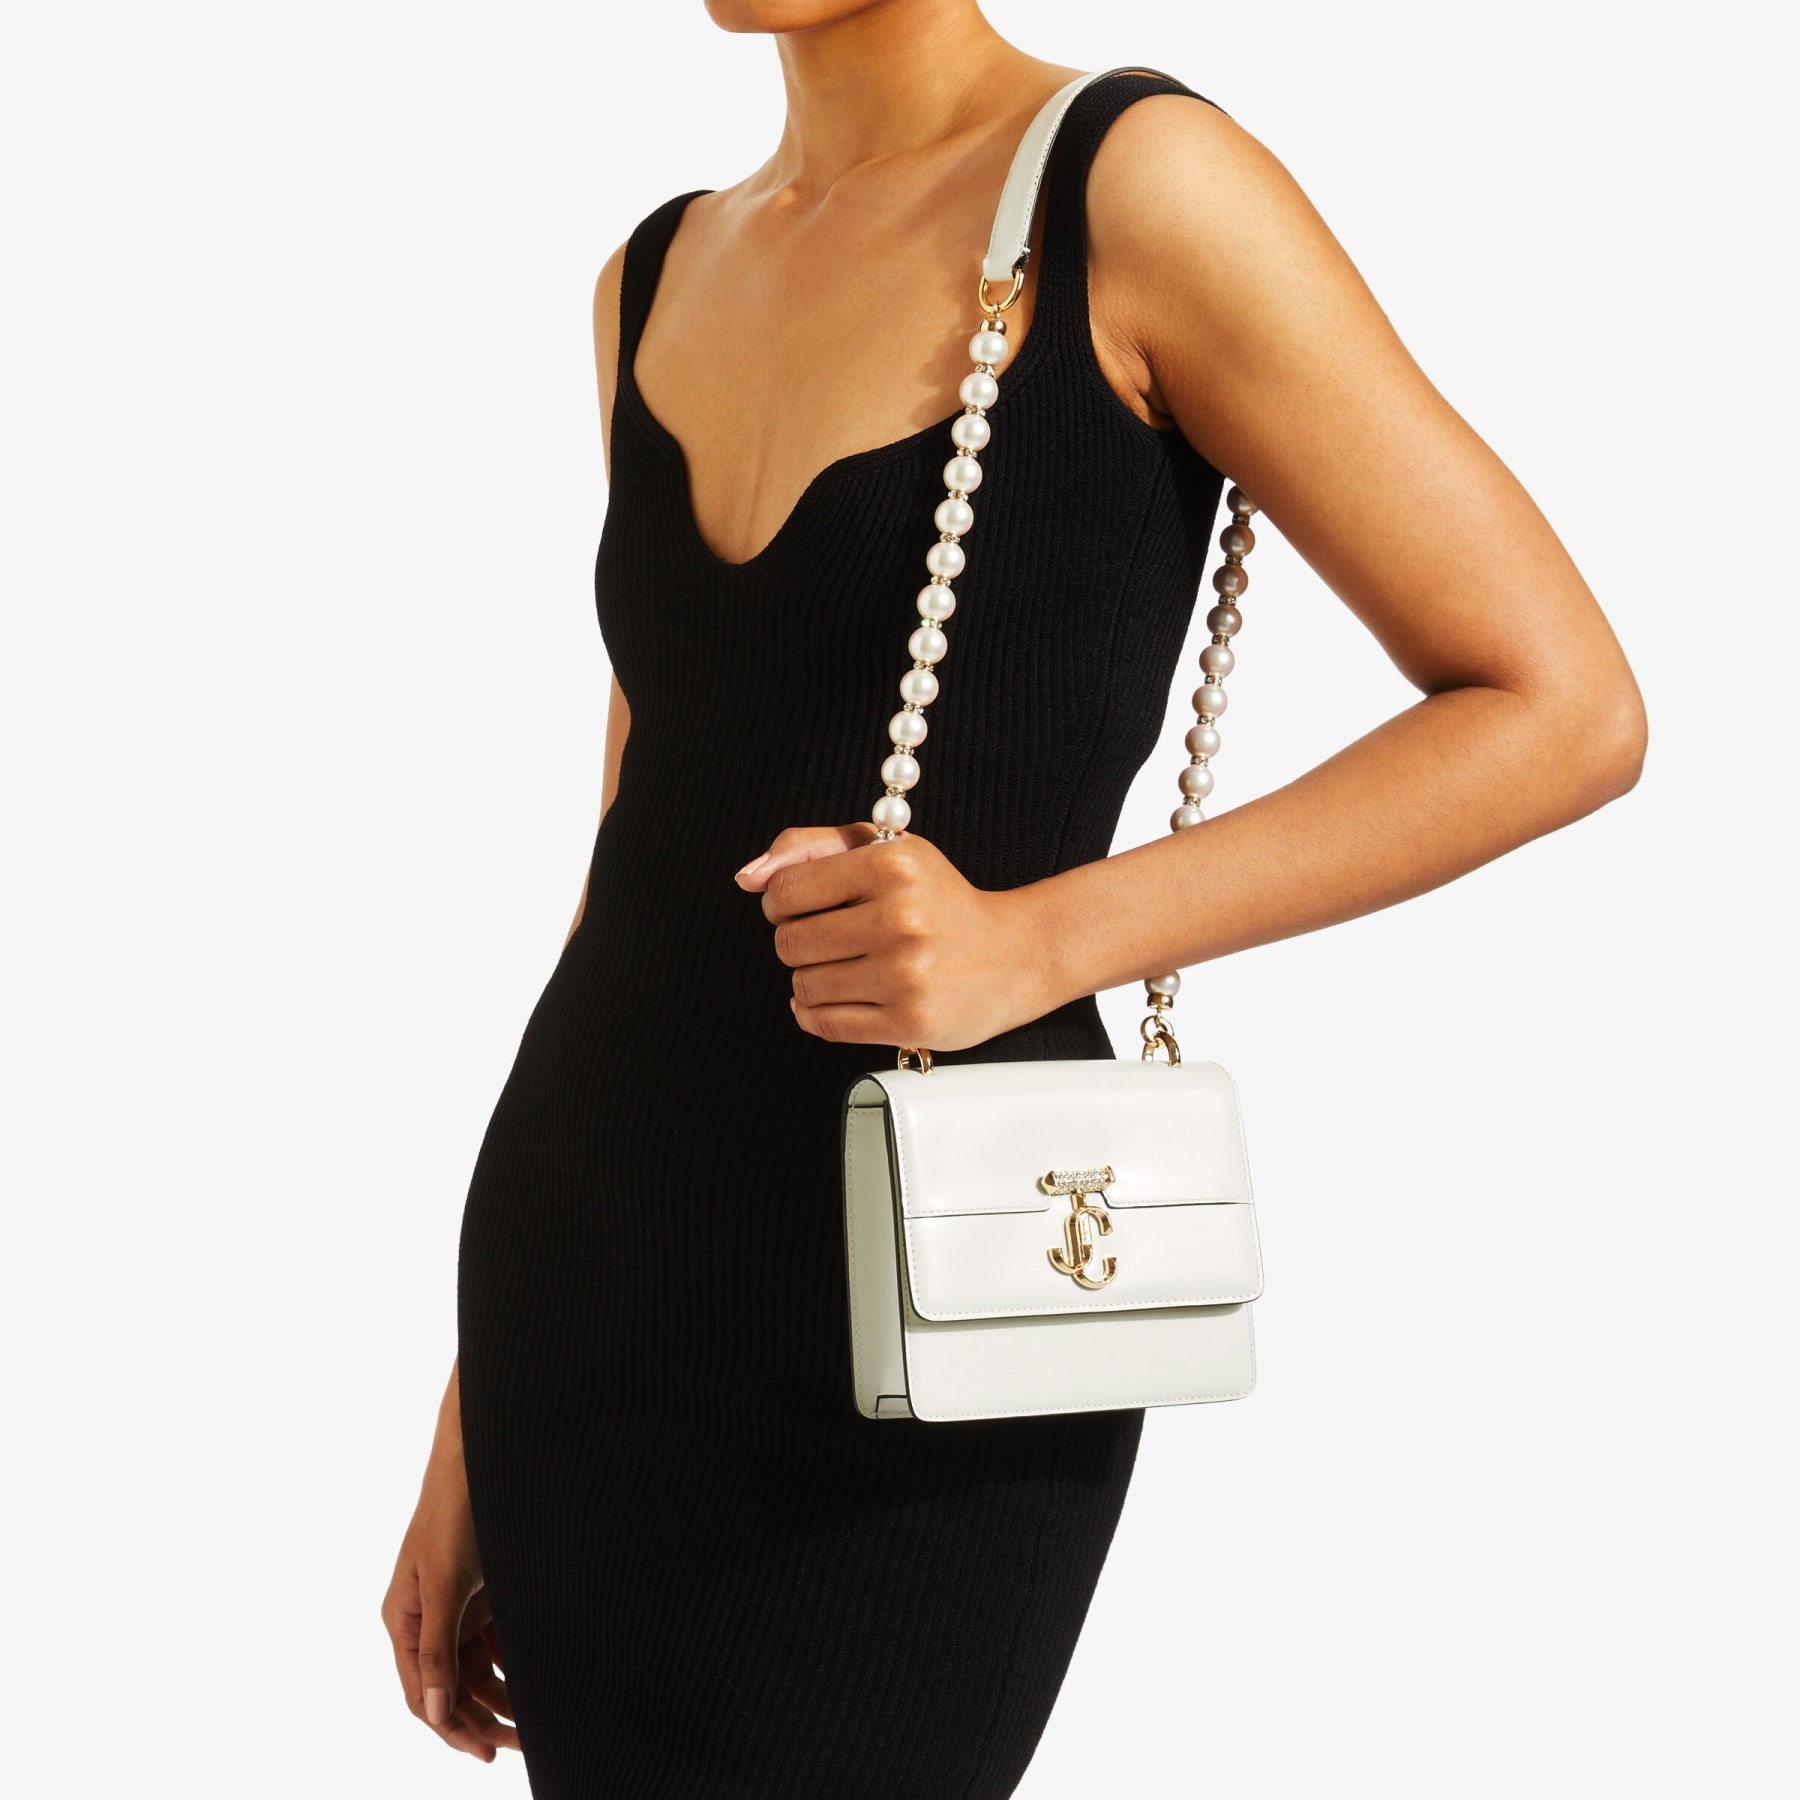 Varenne Quad XS
Latte Leather Shoulder Bag with Pearl Strap - 2